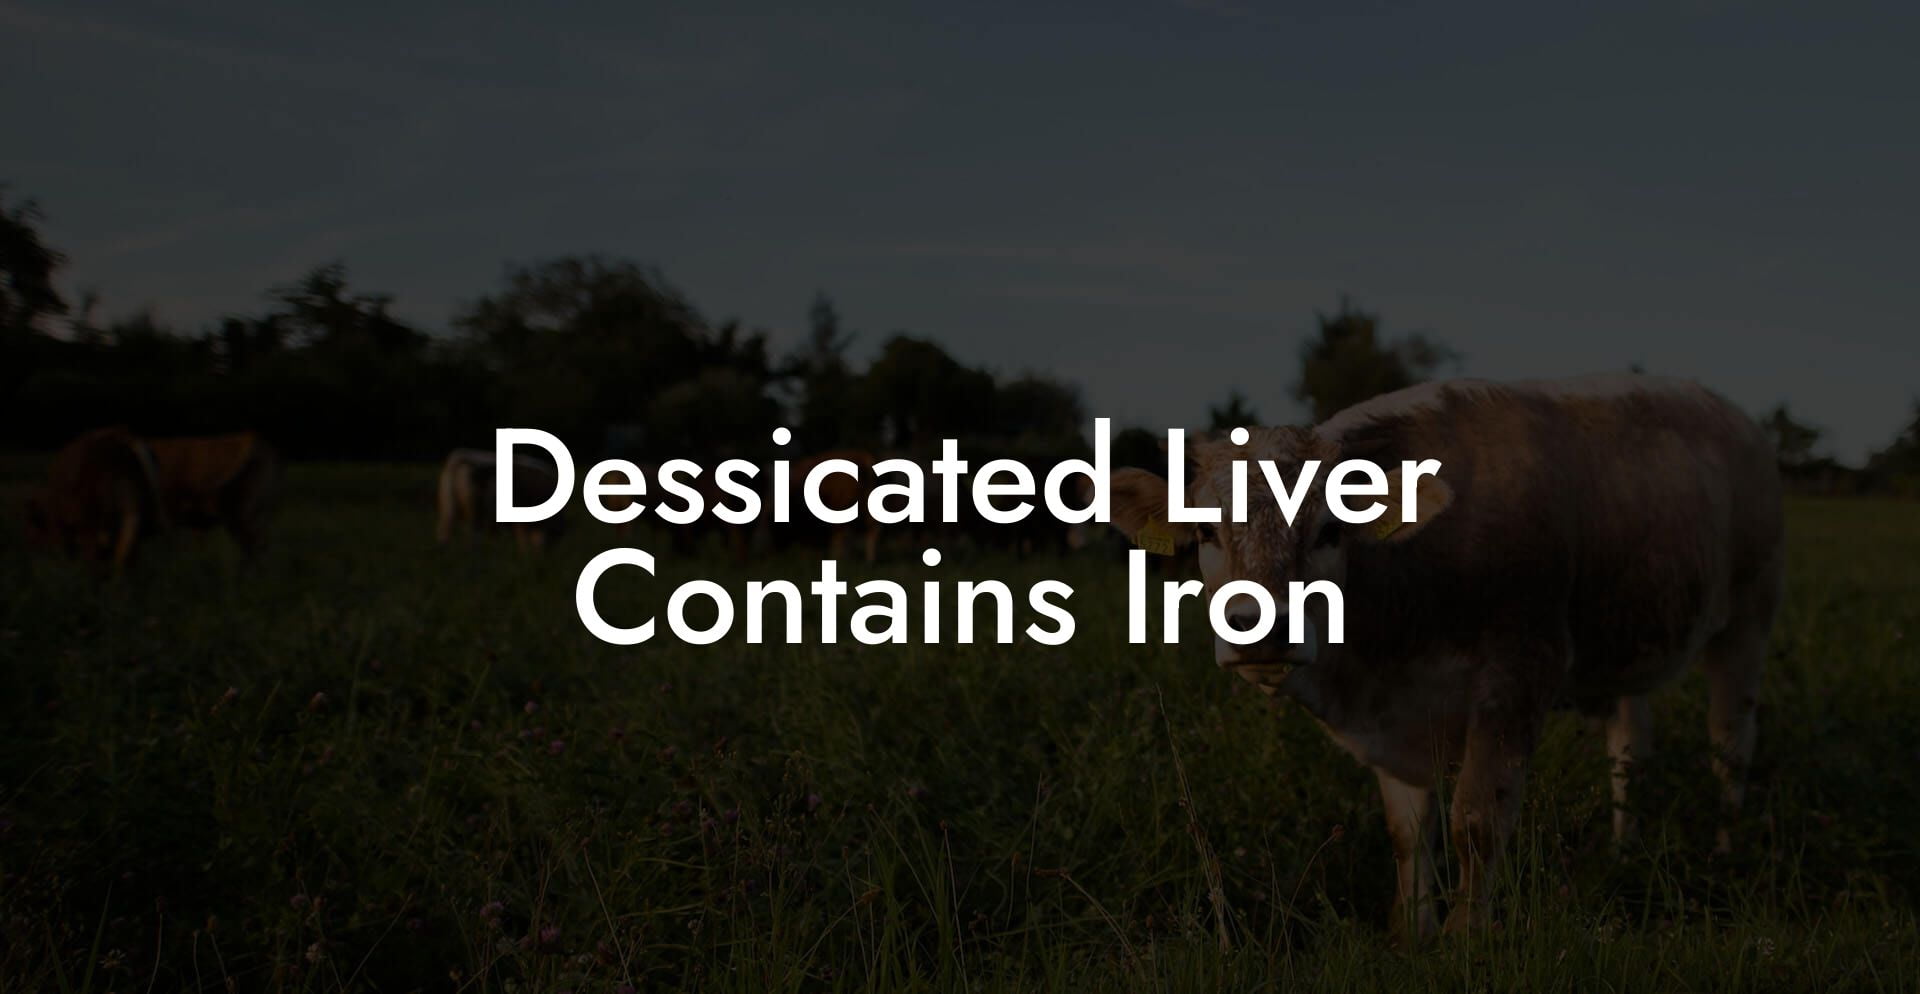 Dessicated Liver Contains Iron